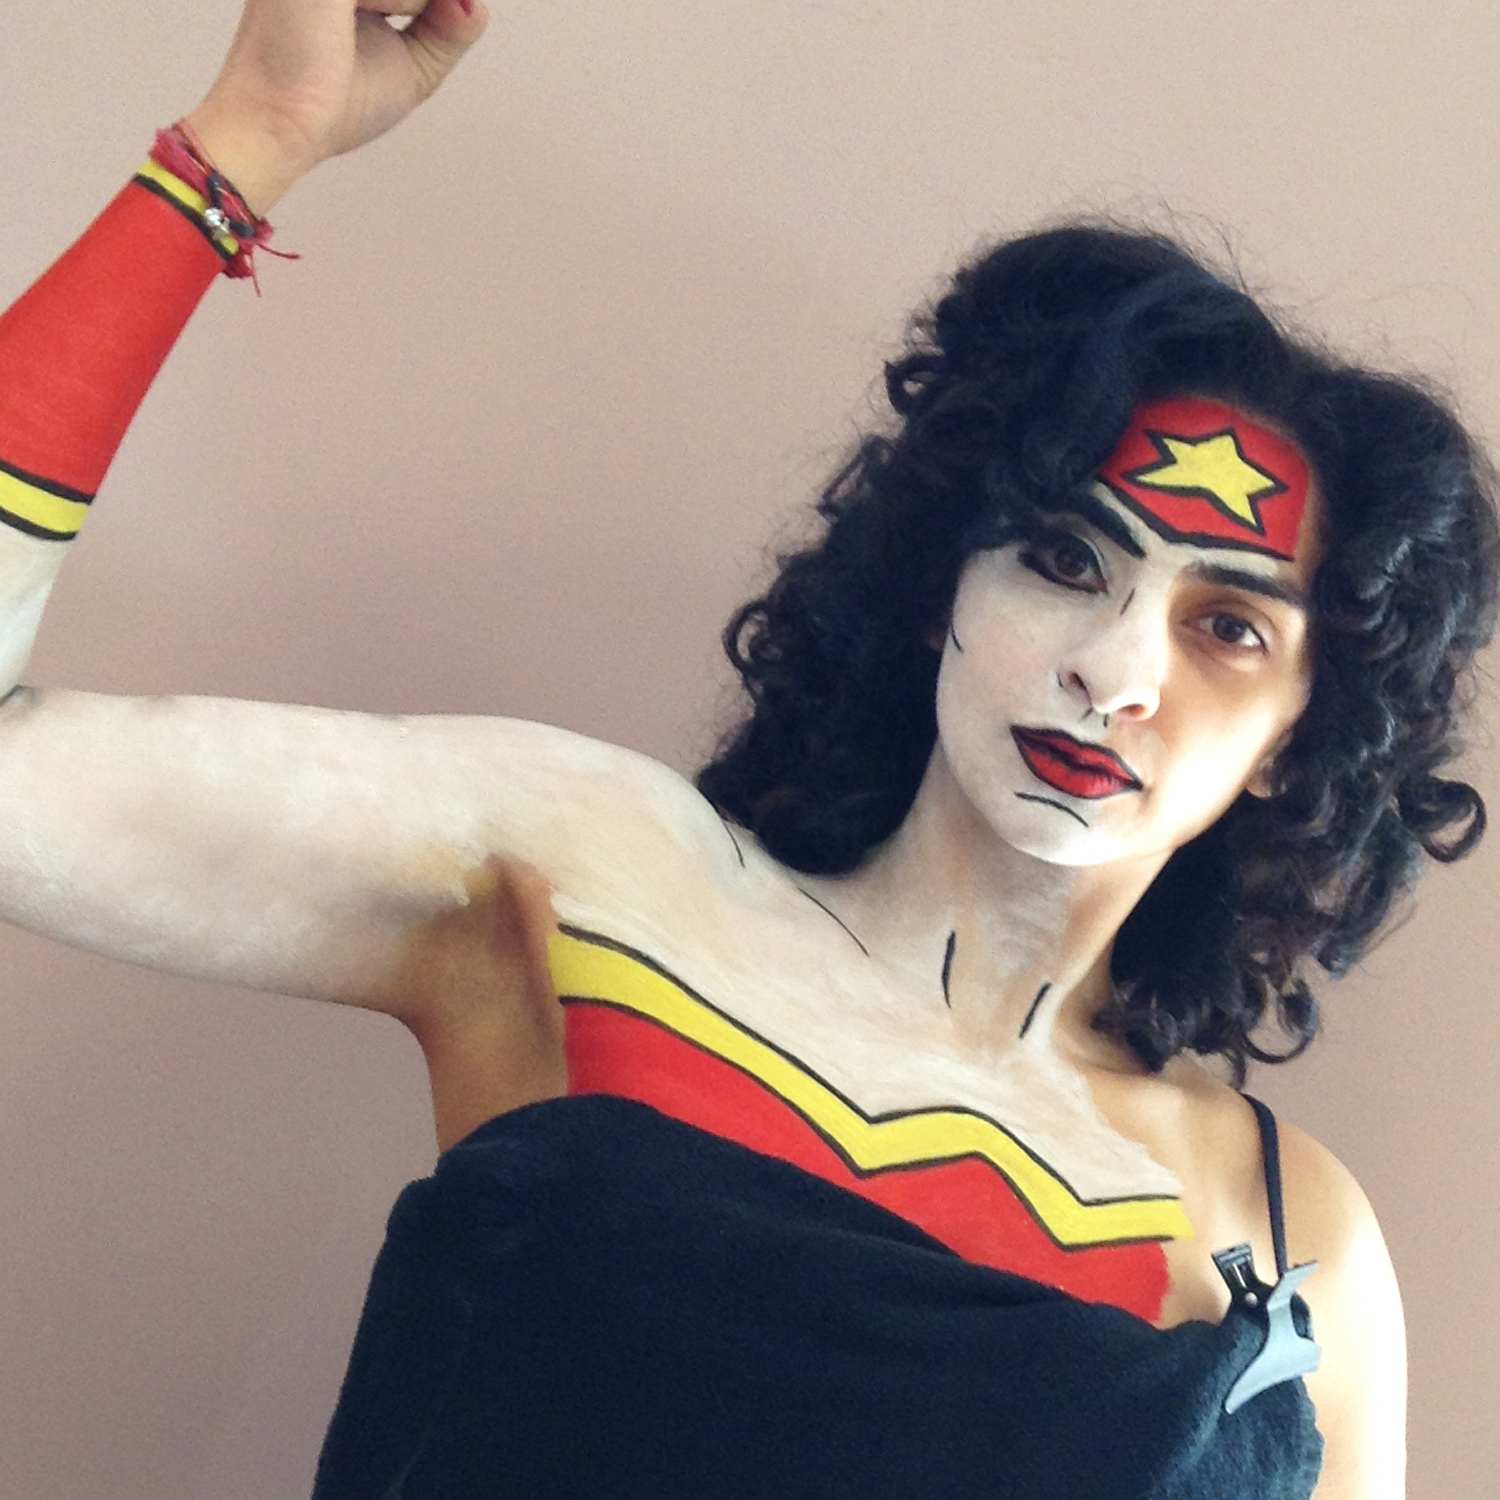 Wonder Woman - 5